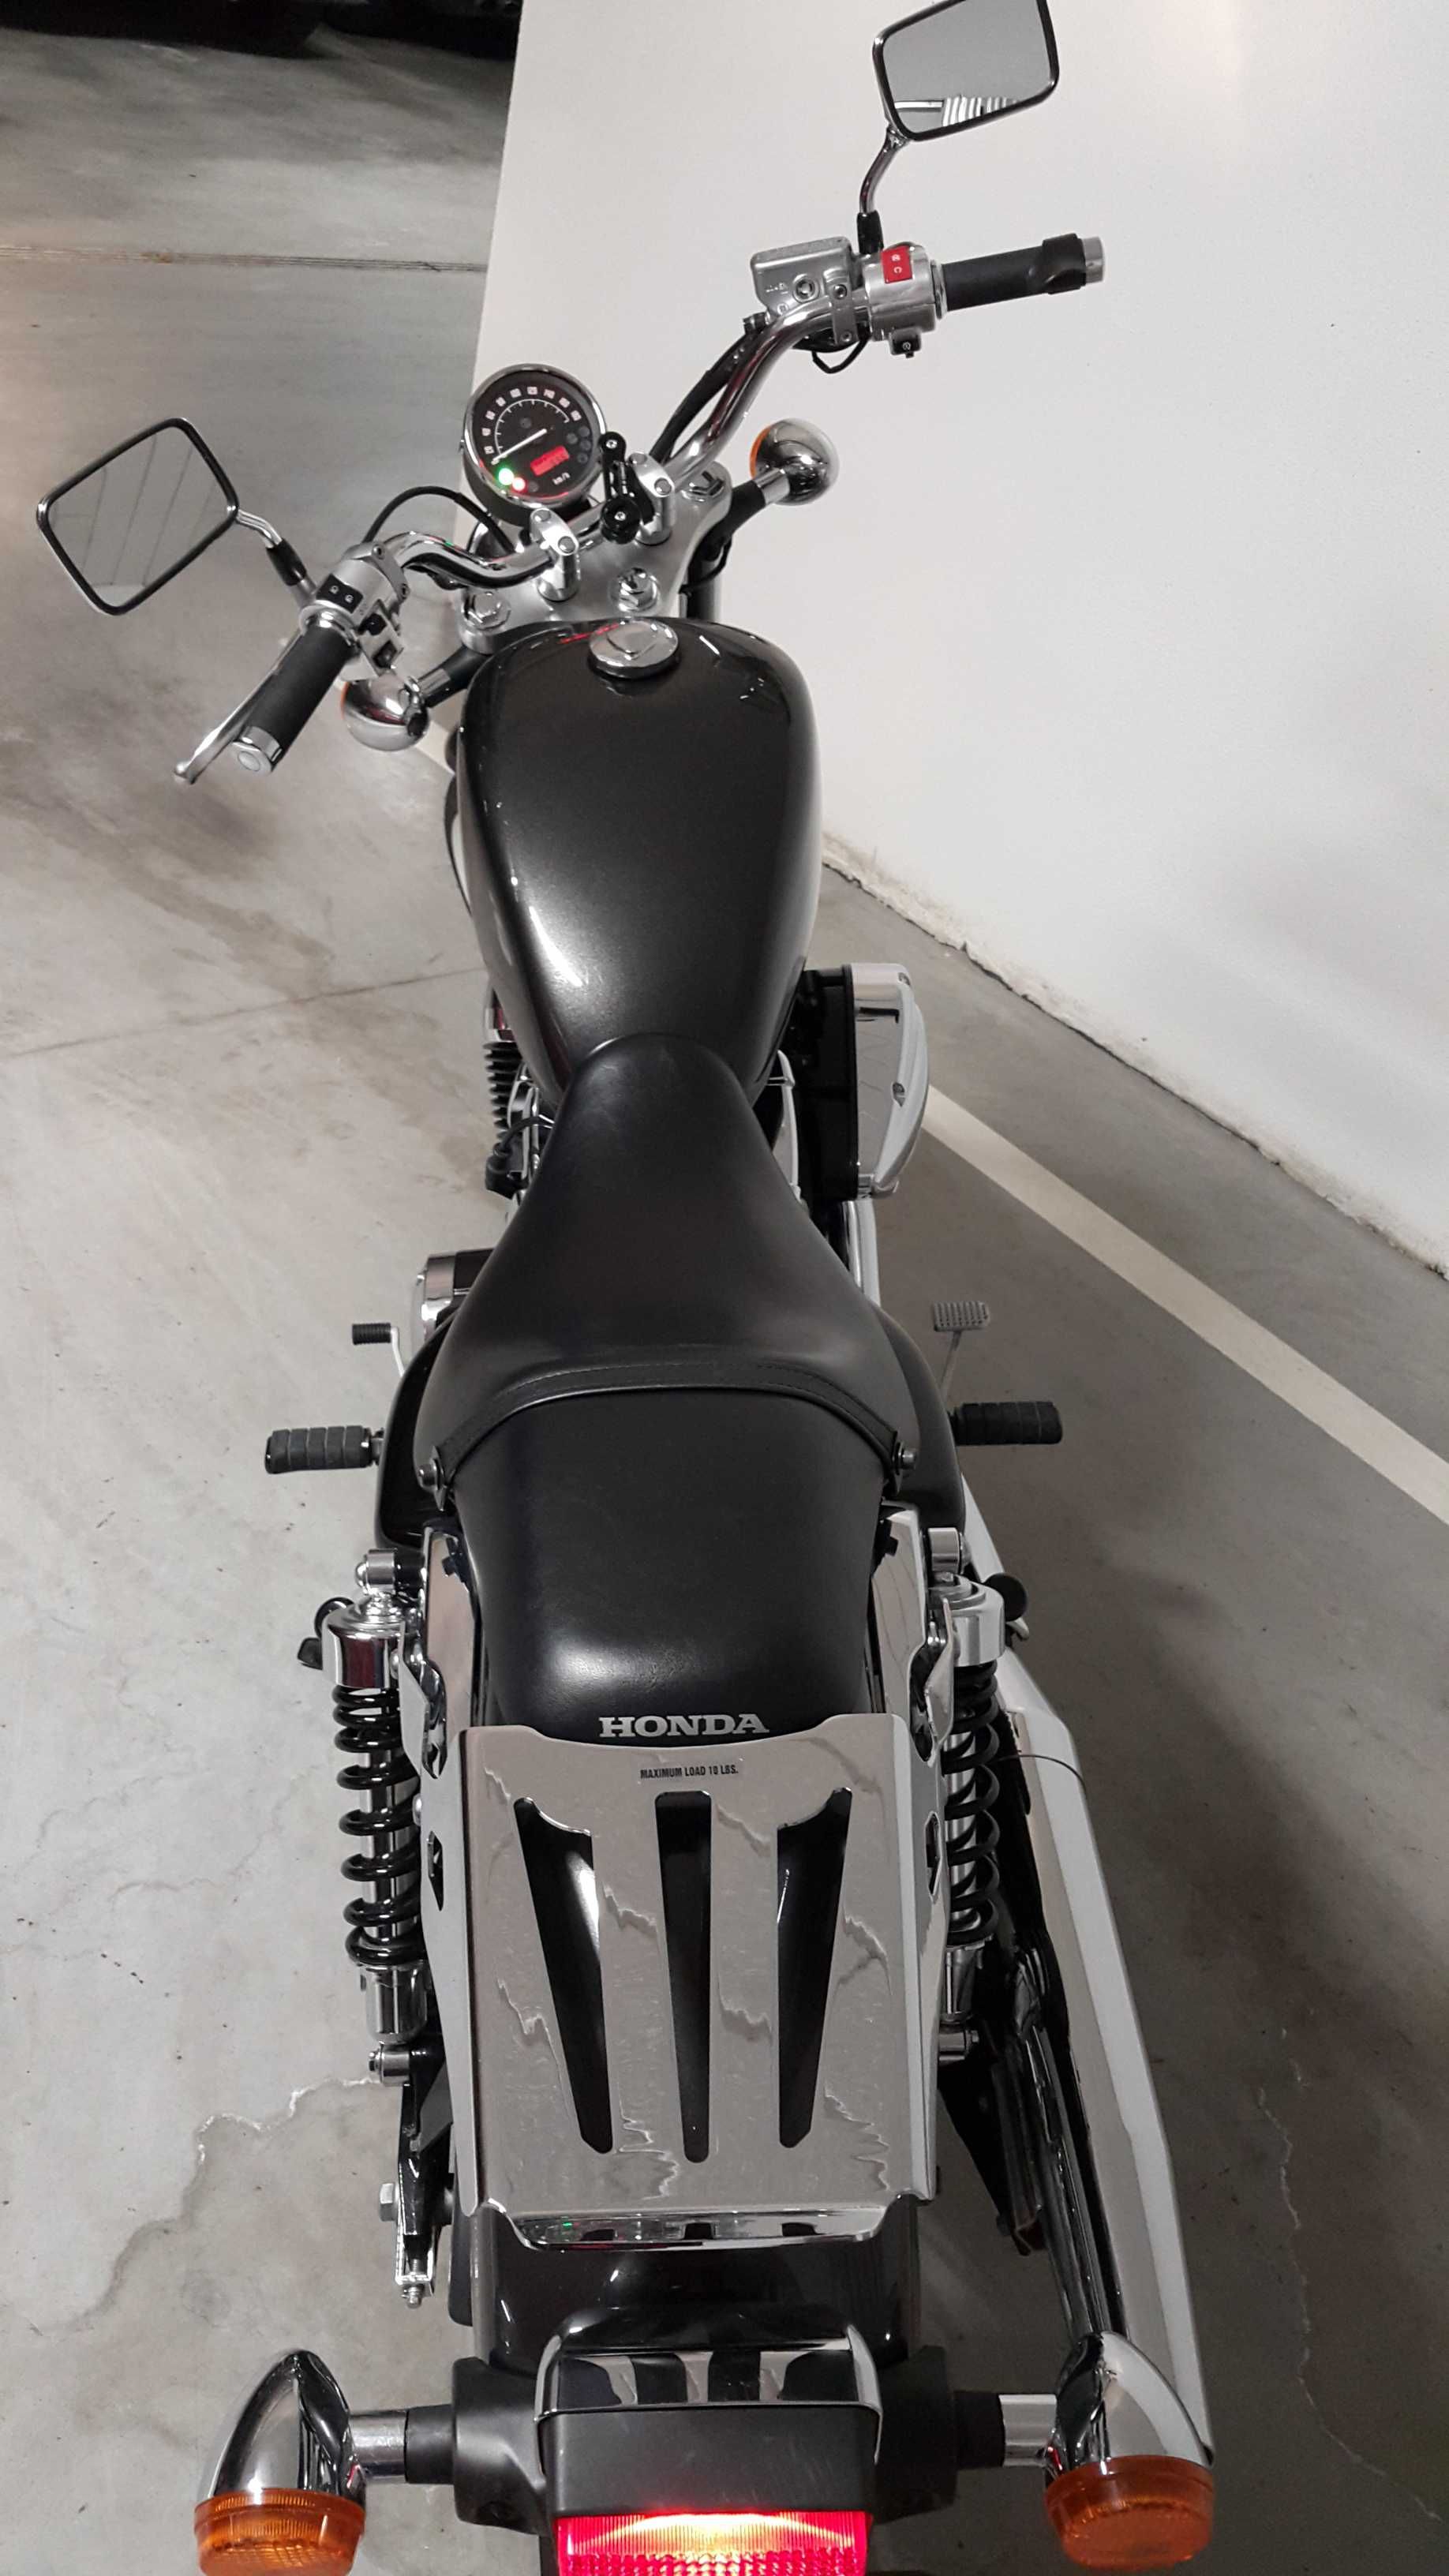 Motocykl Honda VT 750s - jako pierwszy motocykl, chociaż nie tylko...